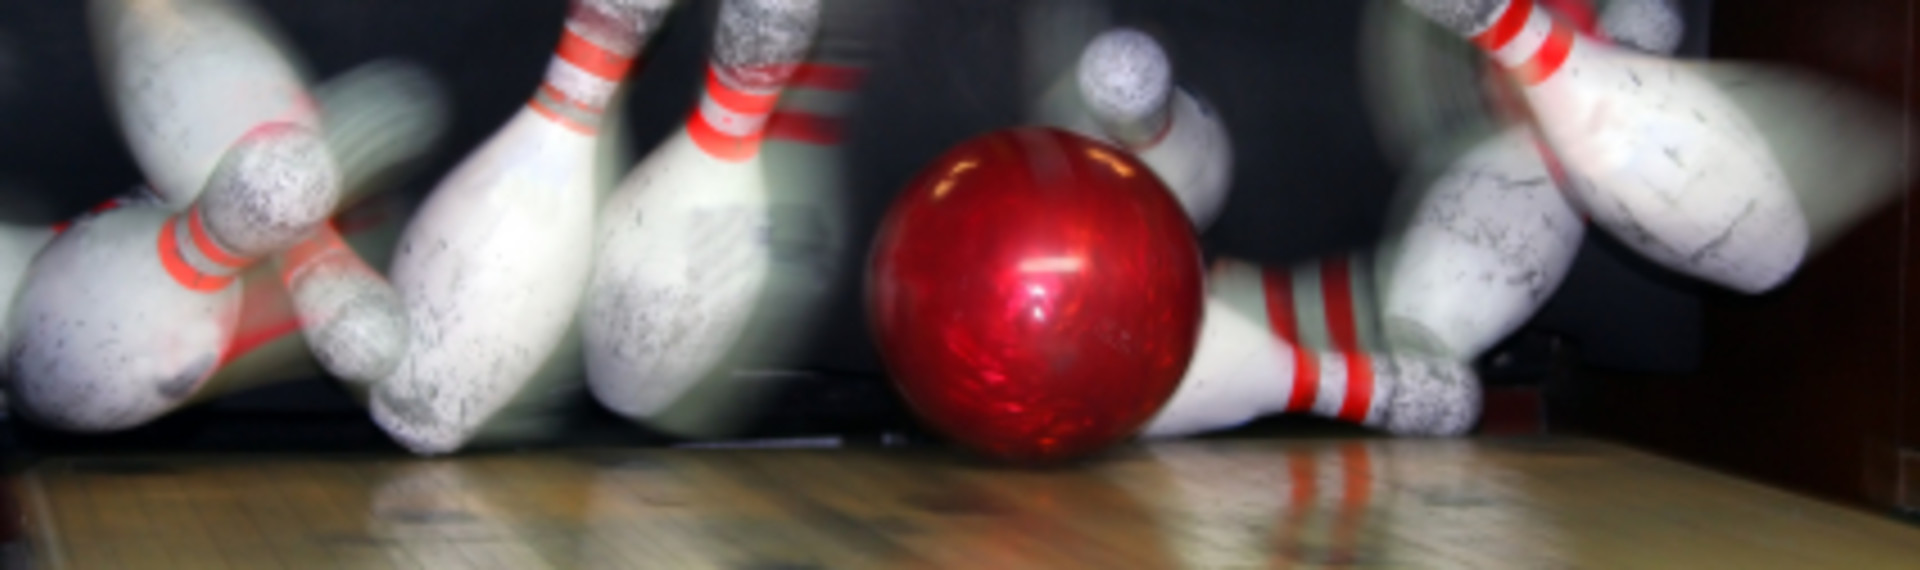 Bowling i Vilnius - et tradisjonelt og morsomt spill for hele gjengen